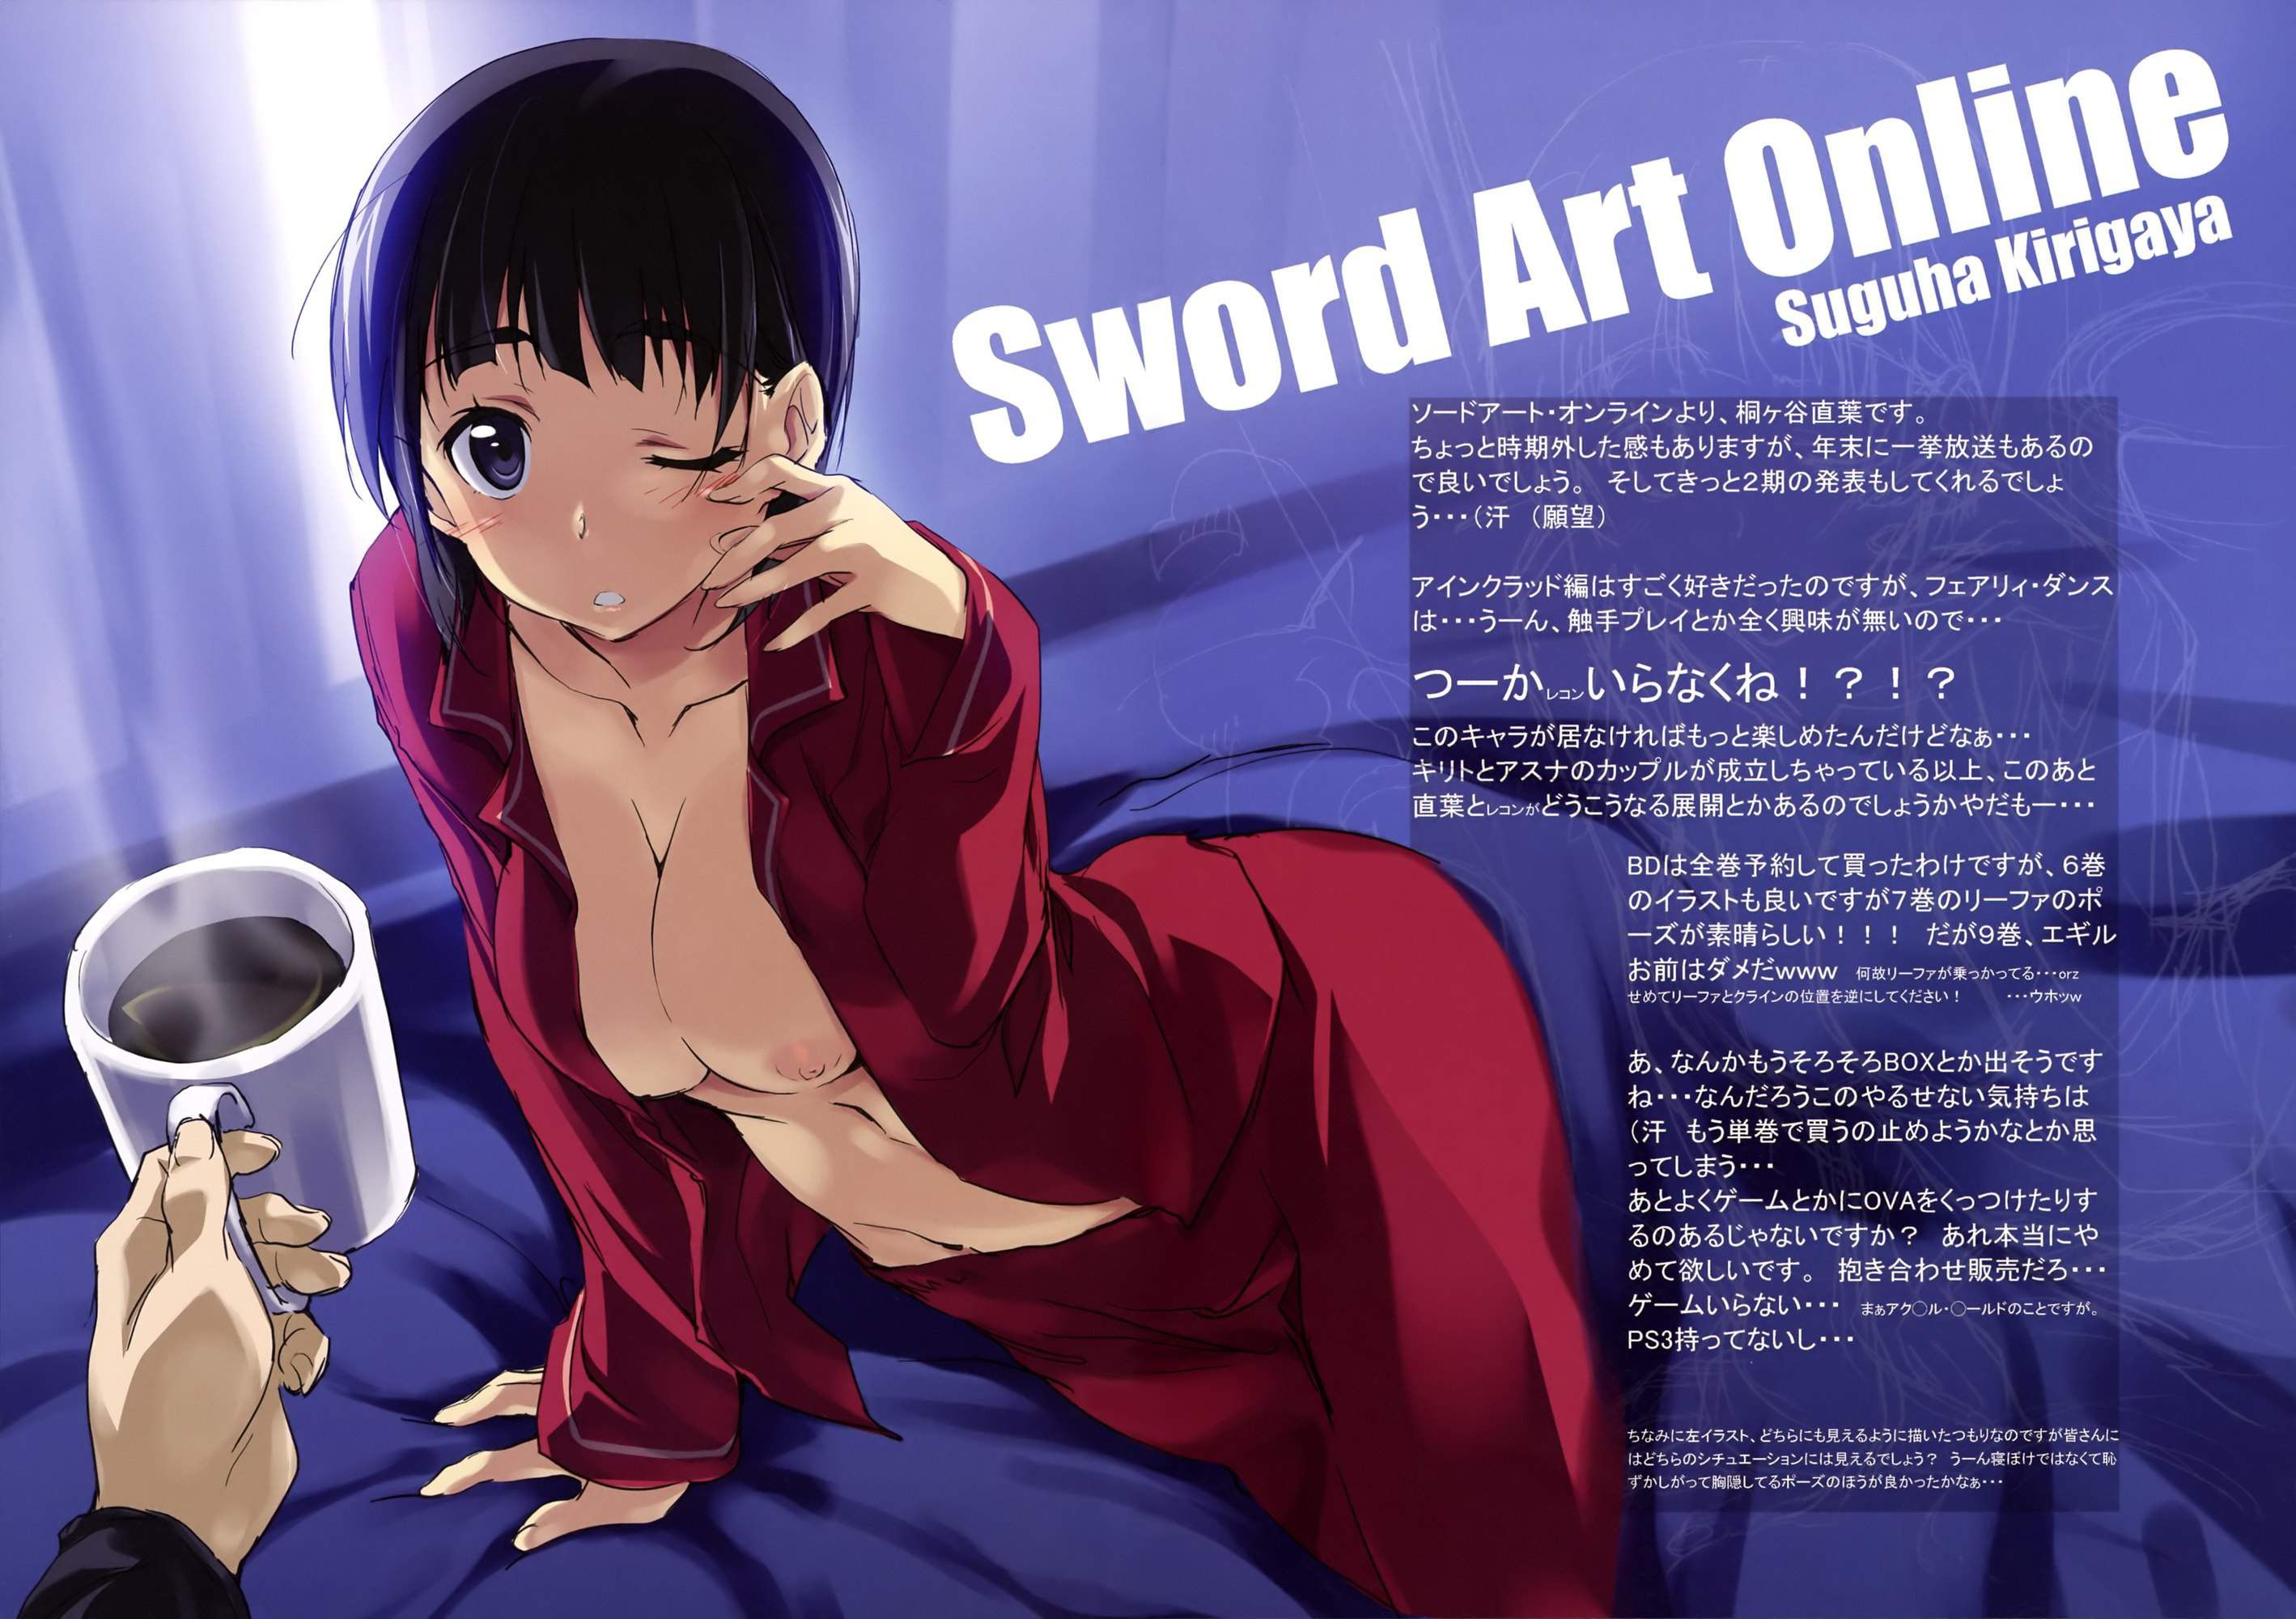 [Sword Art Online] (Kirigaya suguha) Erotic &amp; Moe Image ⑧ [SAO] 23